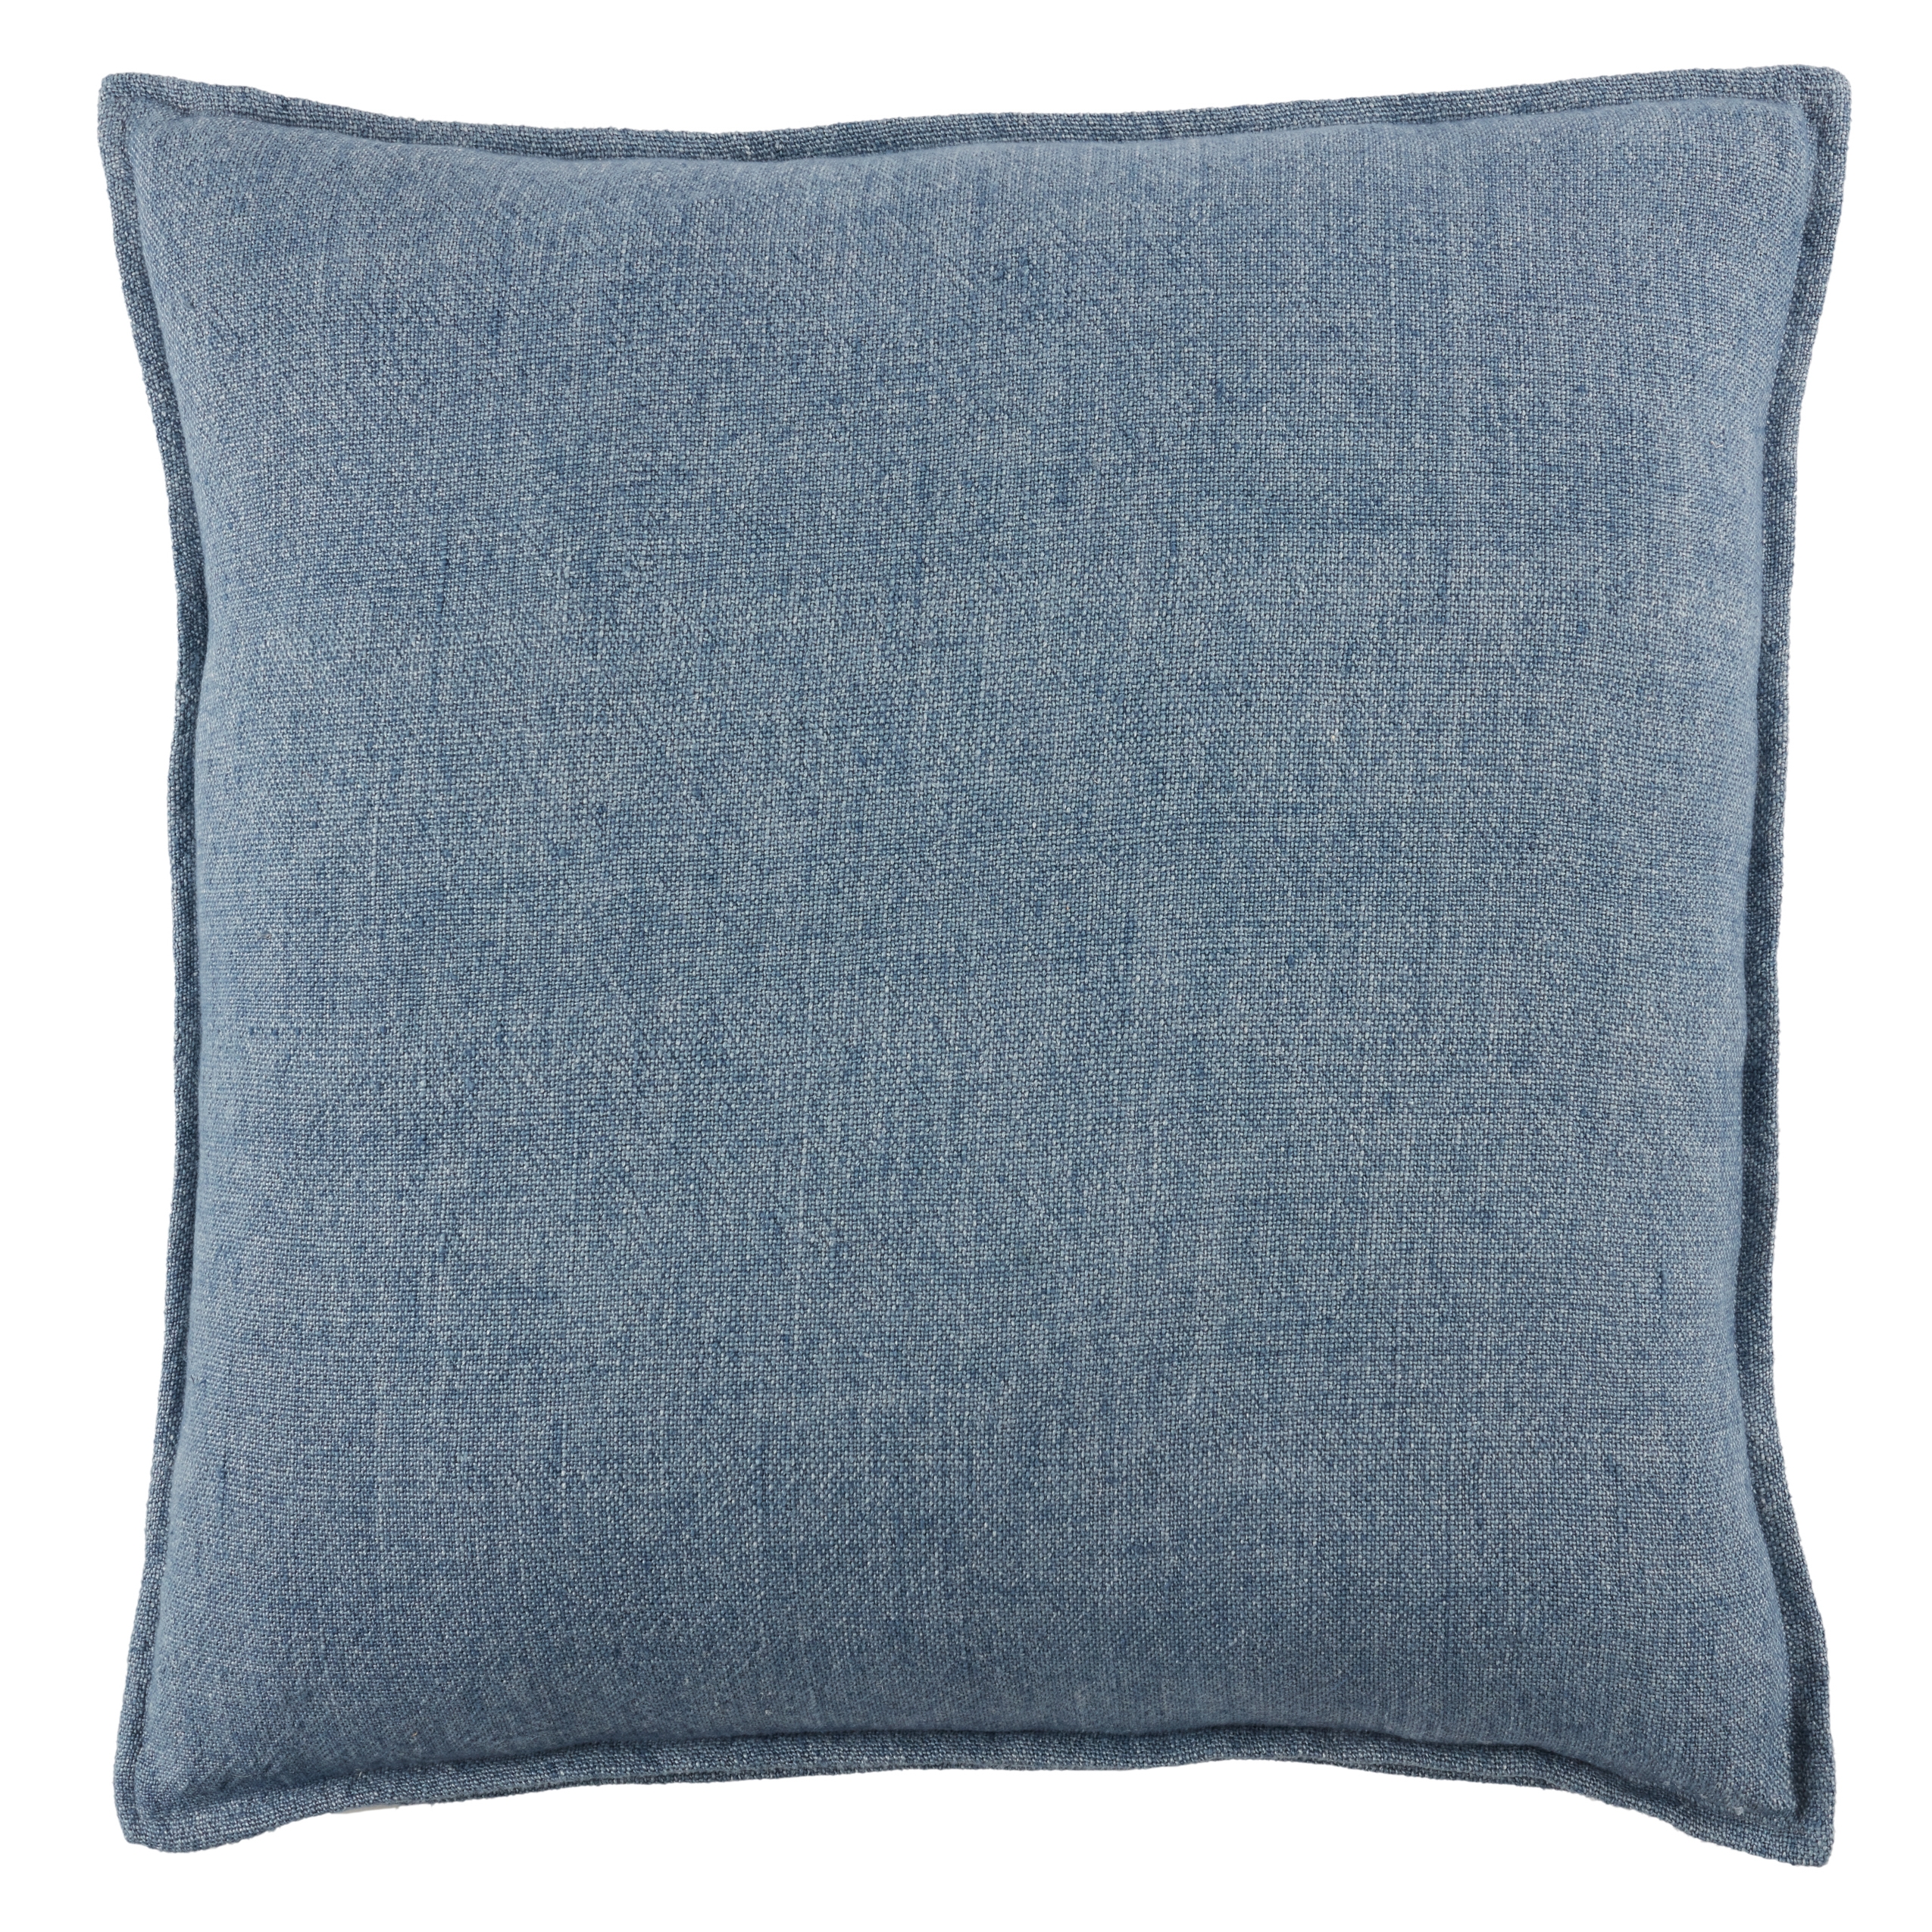 Burbank Throw Pillow, Blue, 20" x 20" - Image 0